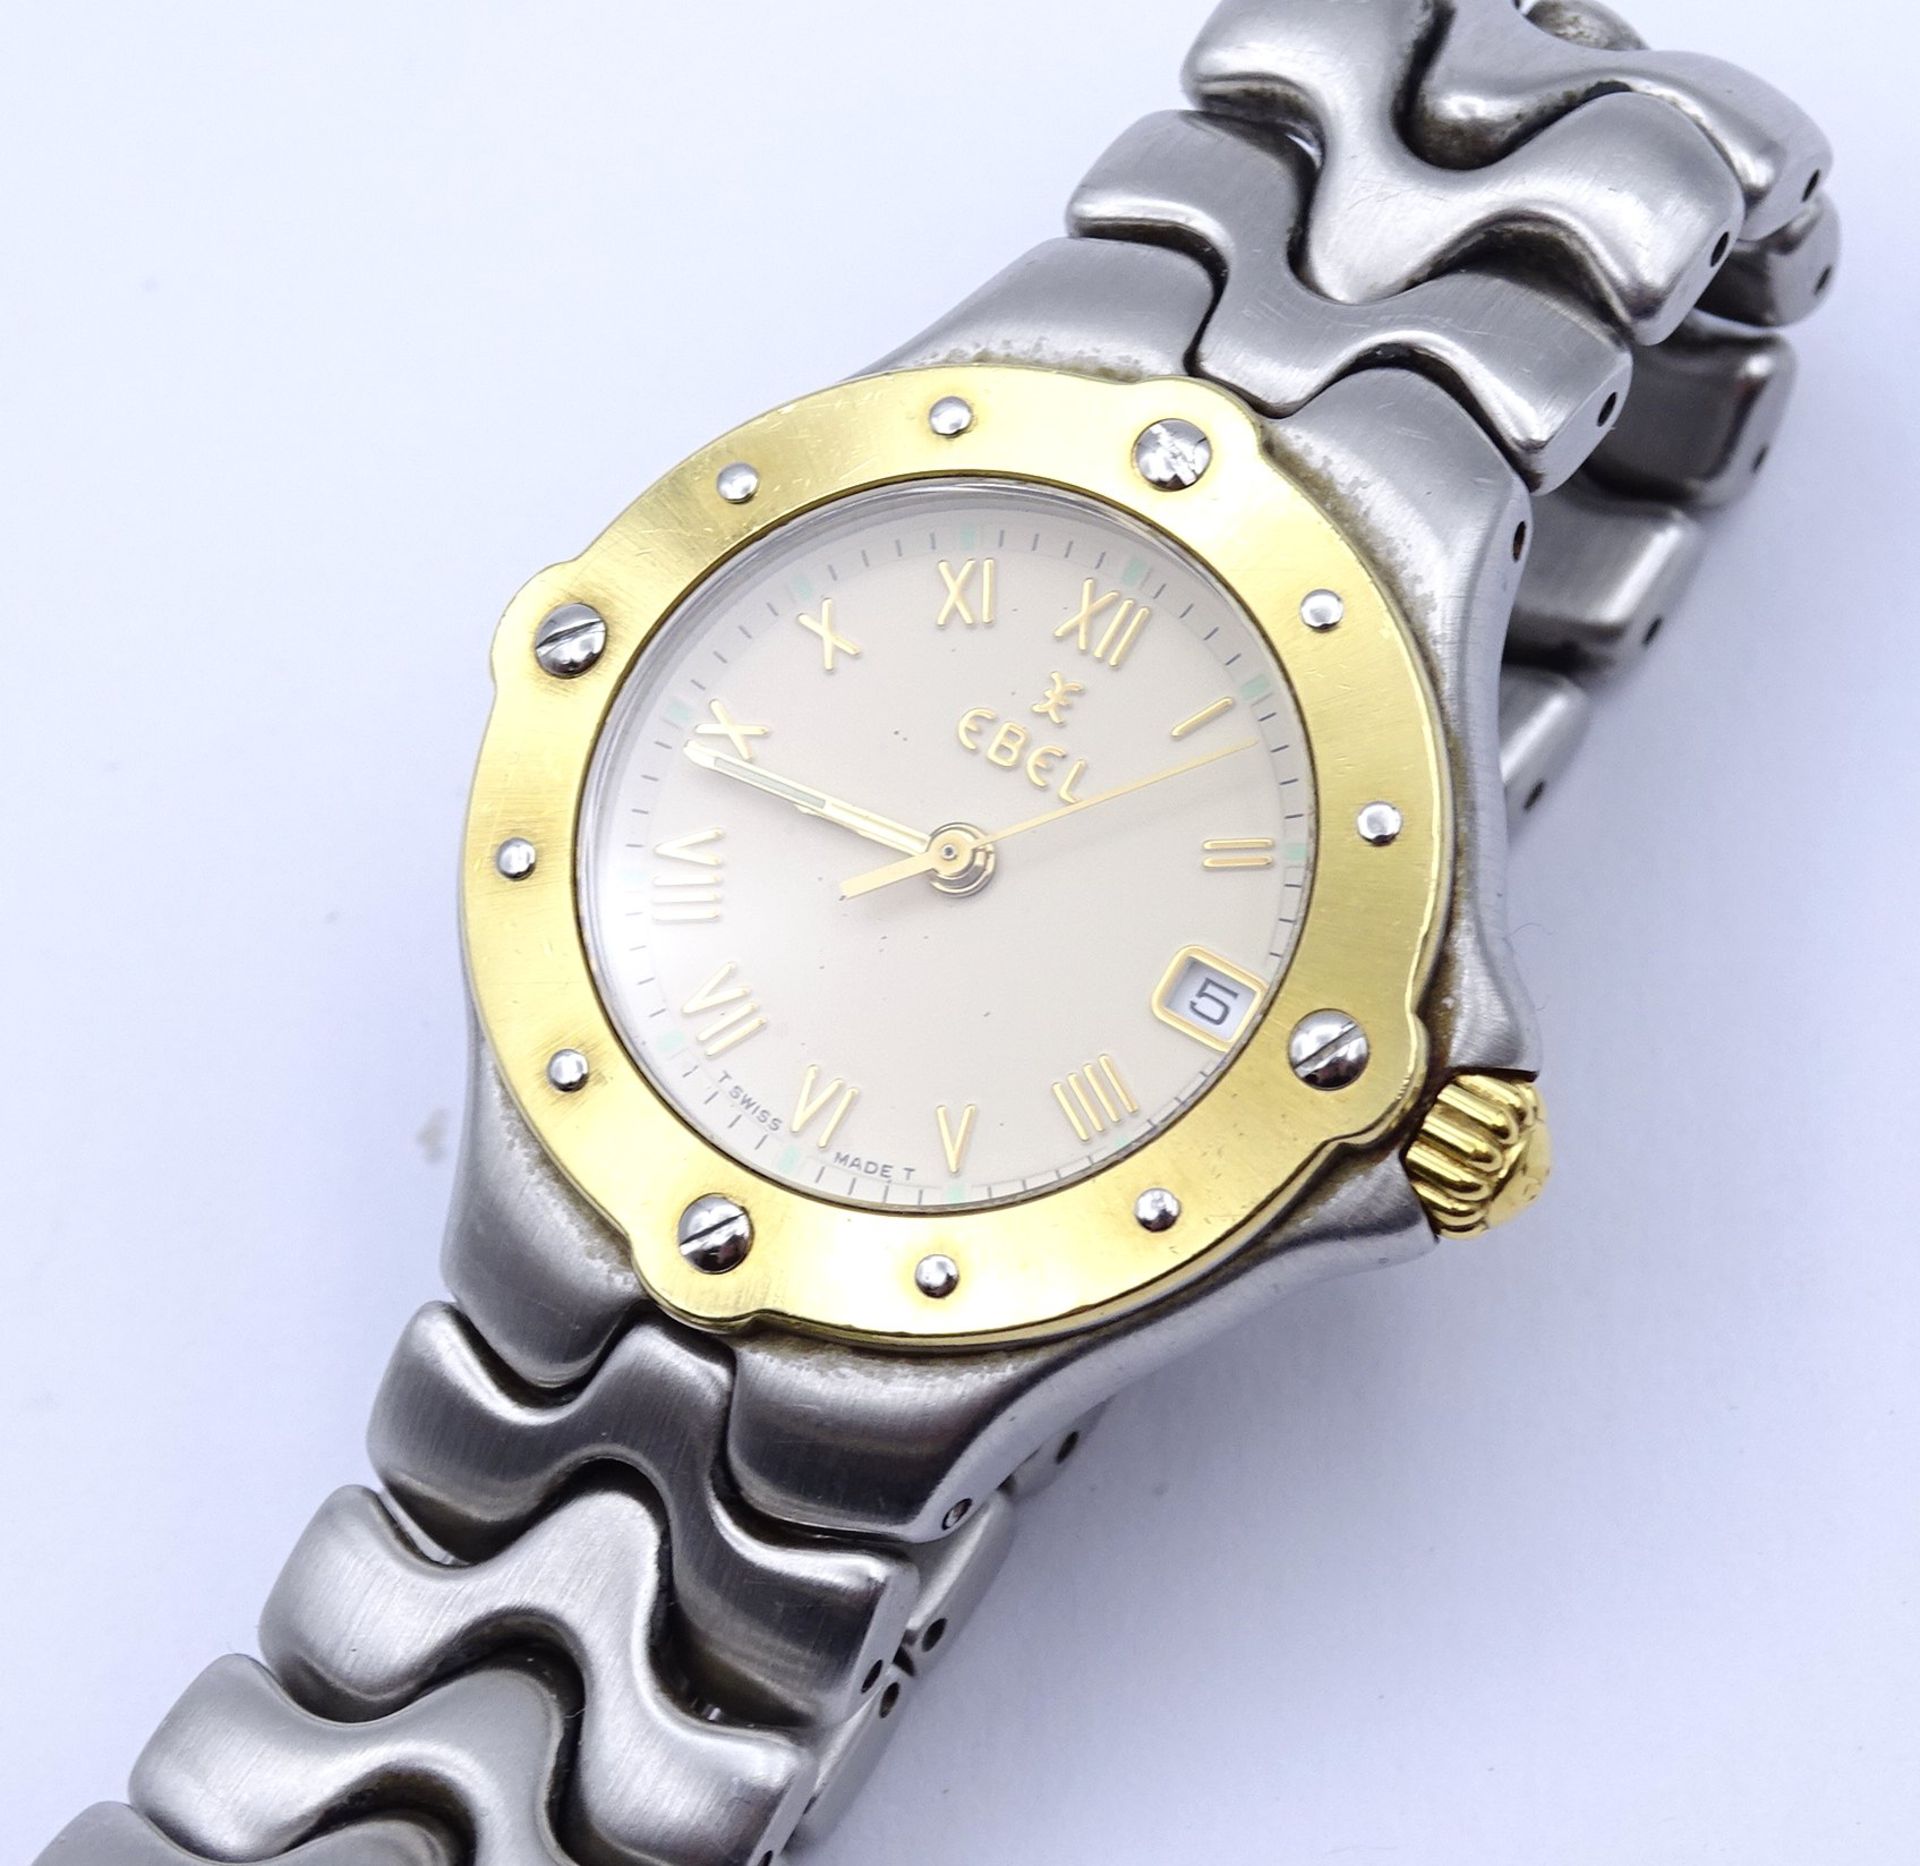 Damen Armbanduhr EBEL SPORTWAVE , Stahl / Gelbgold, Quartz, D. 26mm, Funktion nicht überprüft - Image 3 of 5